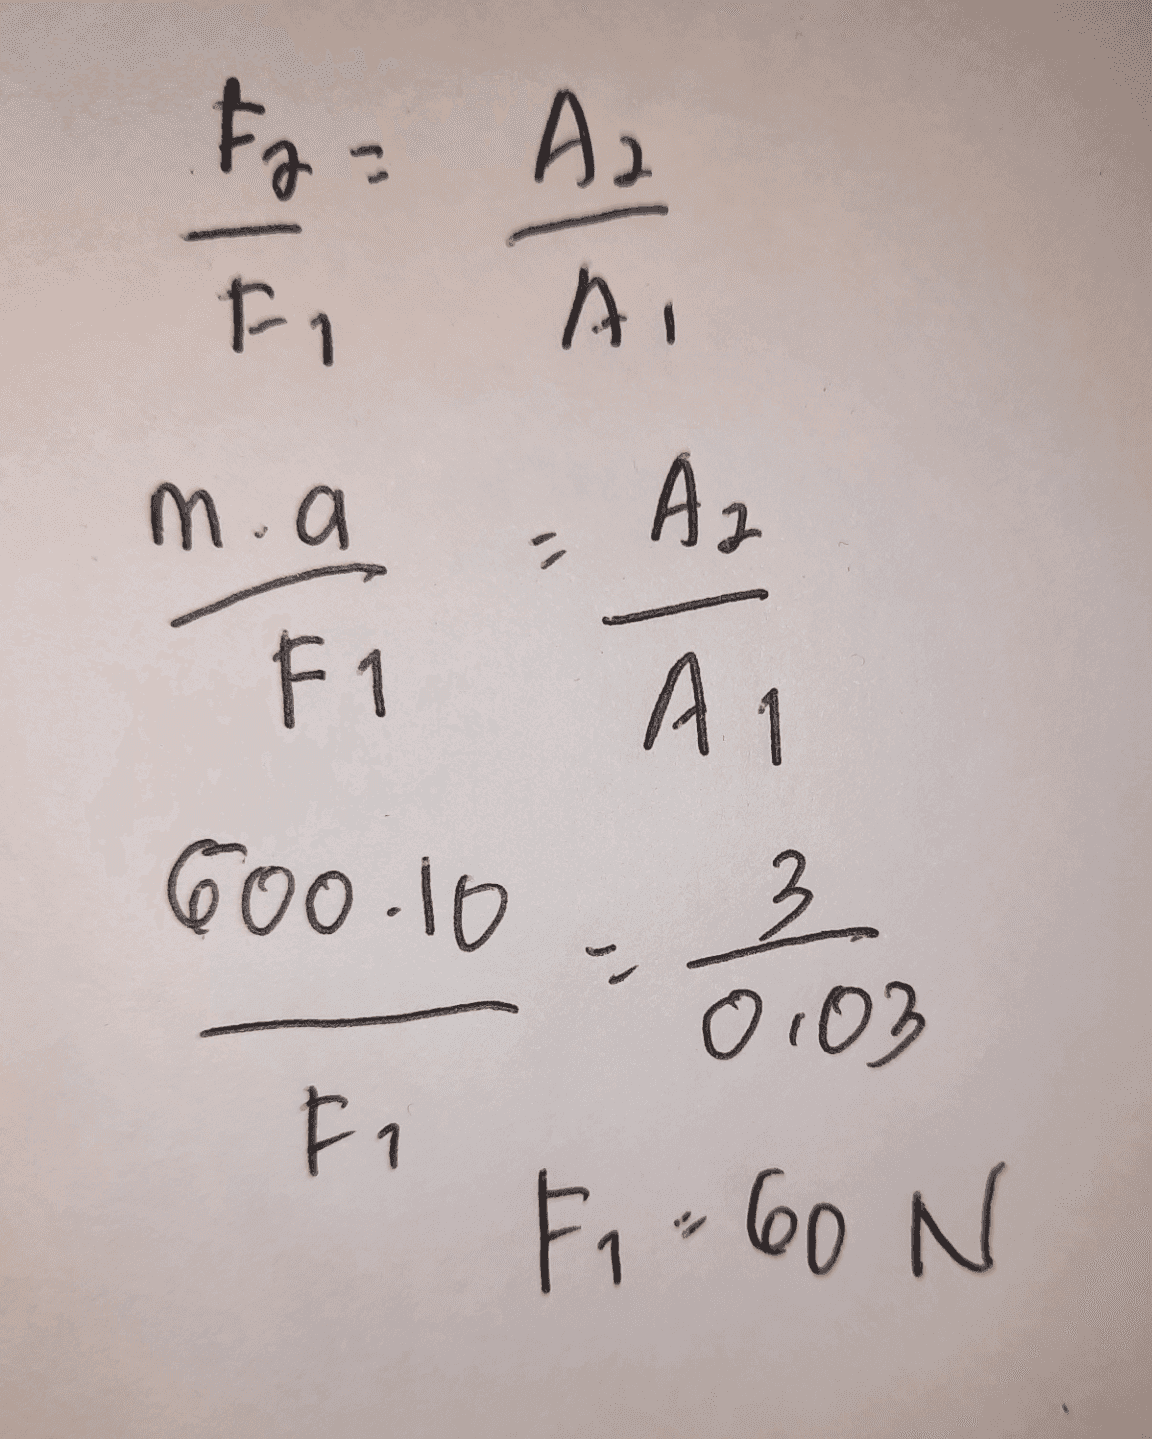 Fo= A. AI % Fi m.a Az دراد F1 A 600.10 " 이 3 0103 Fi Fi 60 N N 